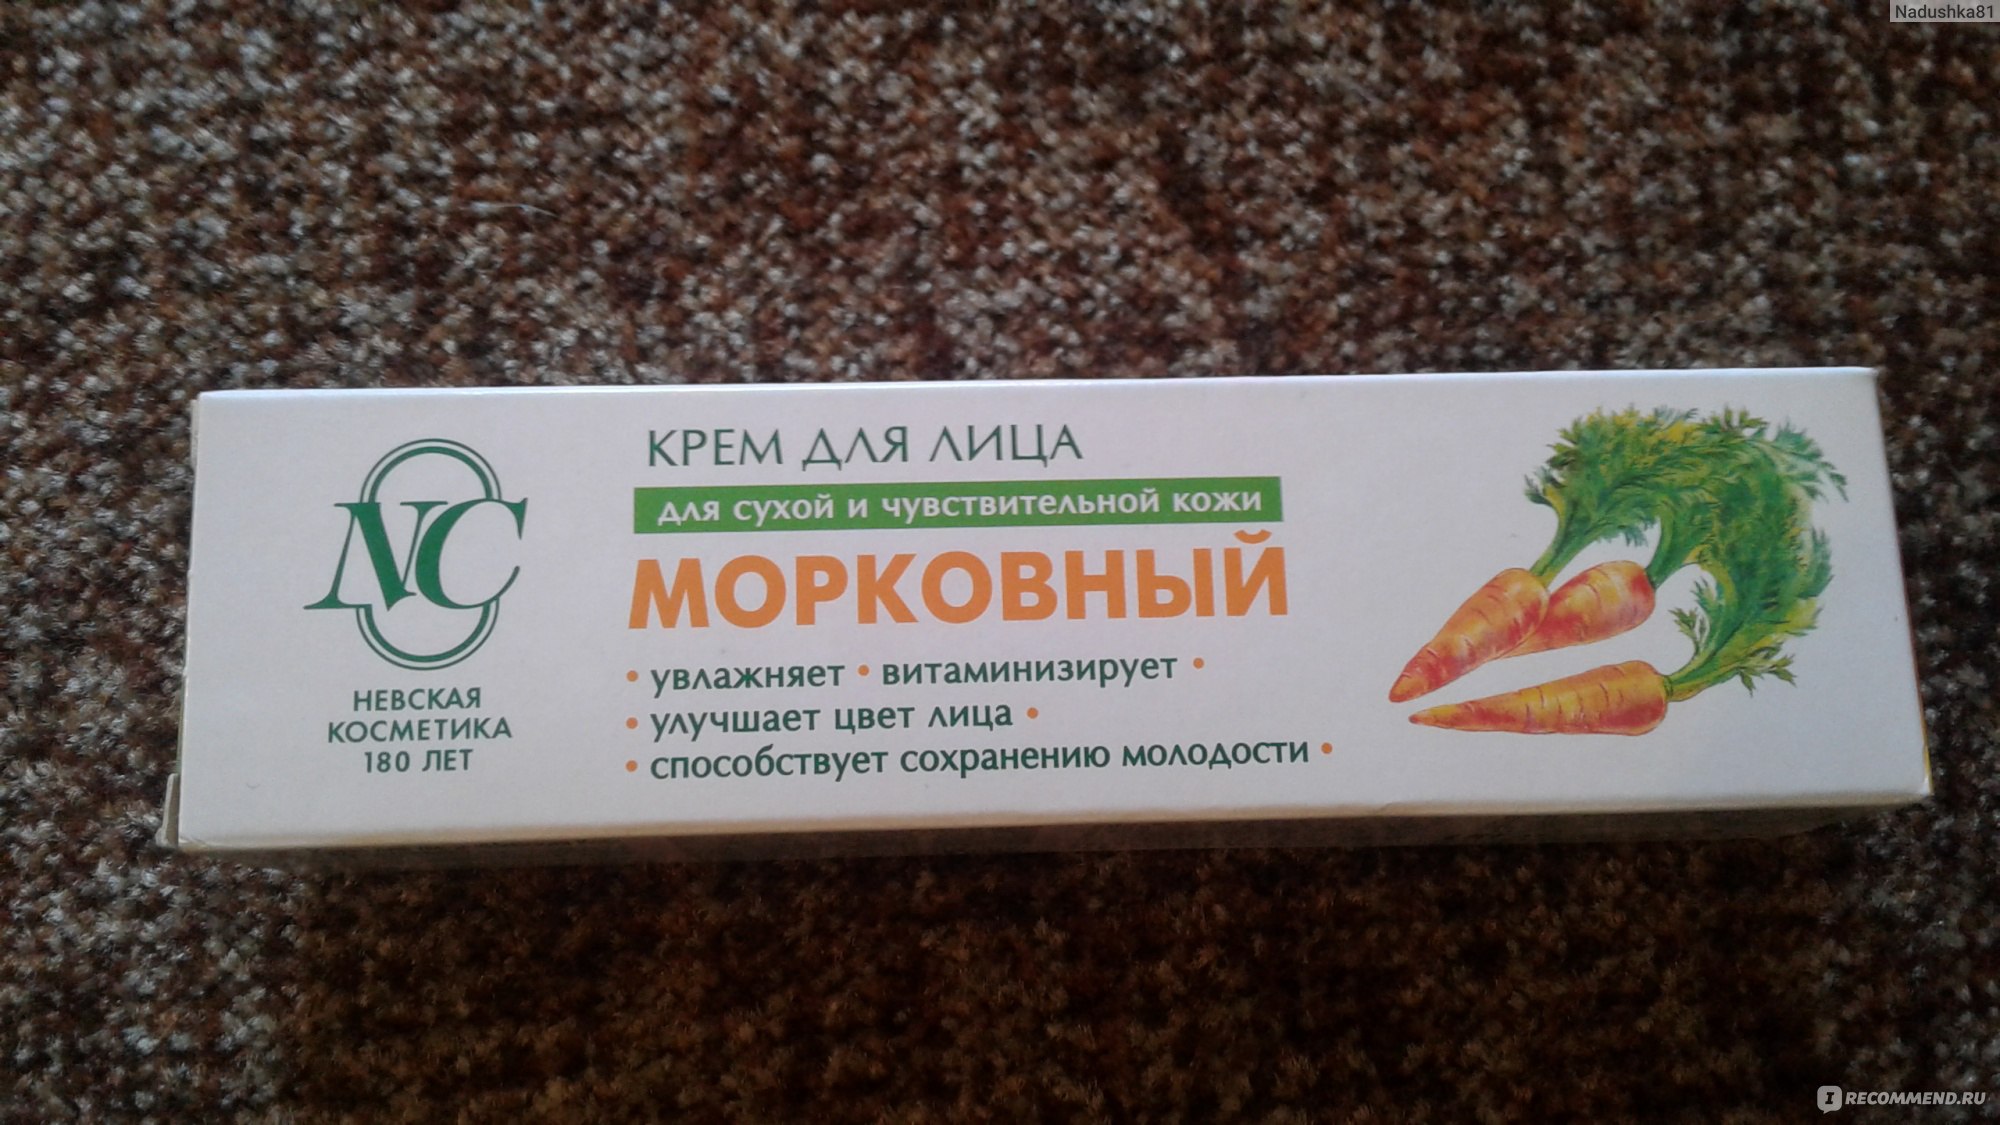 Вот и я добралась до морковного крема от "невской косметики" за 55 рублей: проверю его действие и скажу свой честный отзыв | k o s m e t o s | дзен